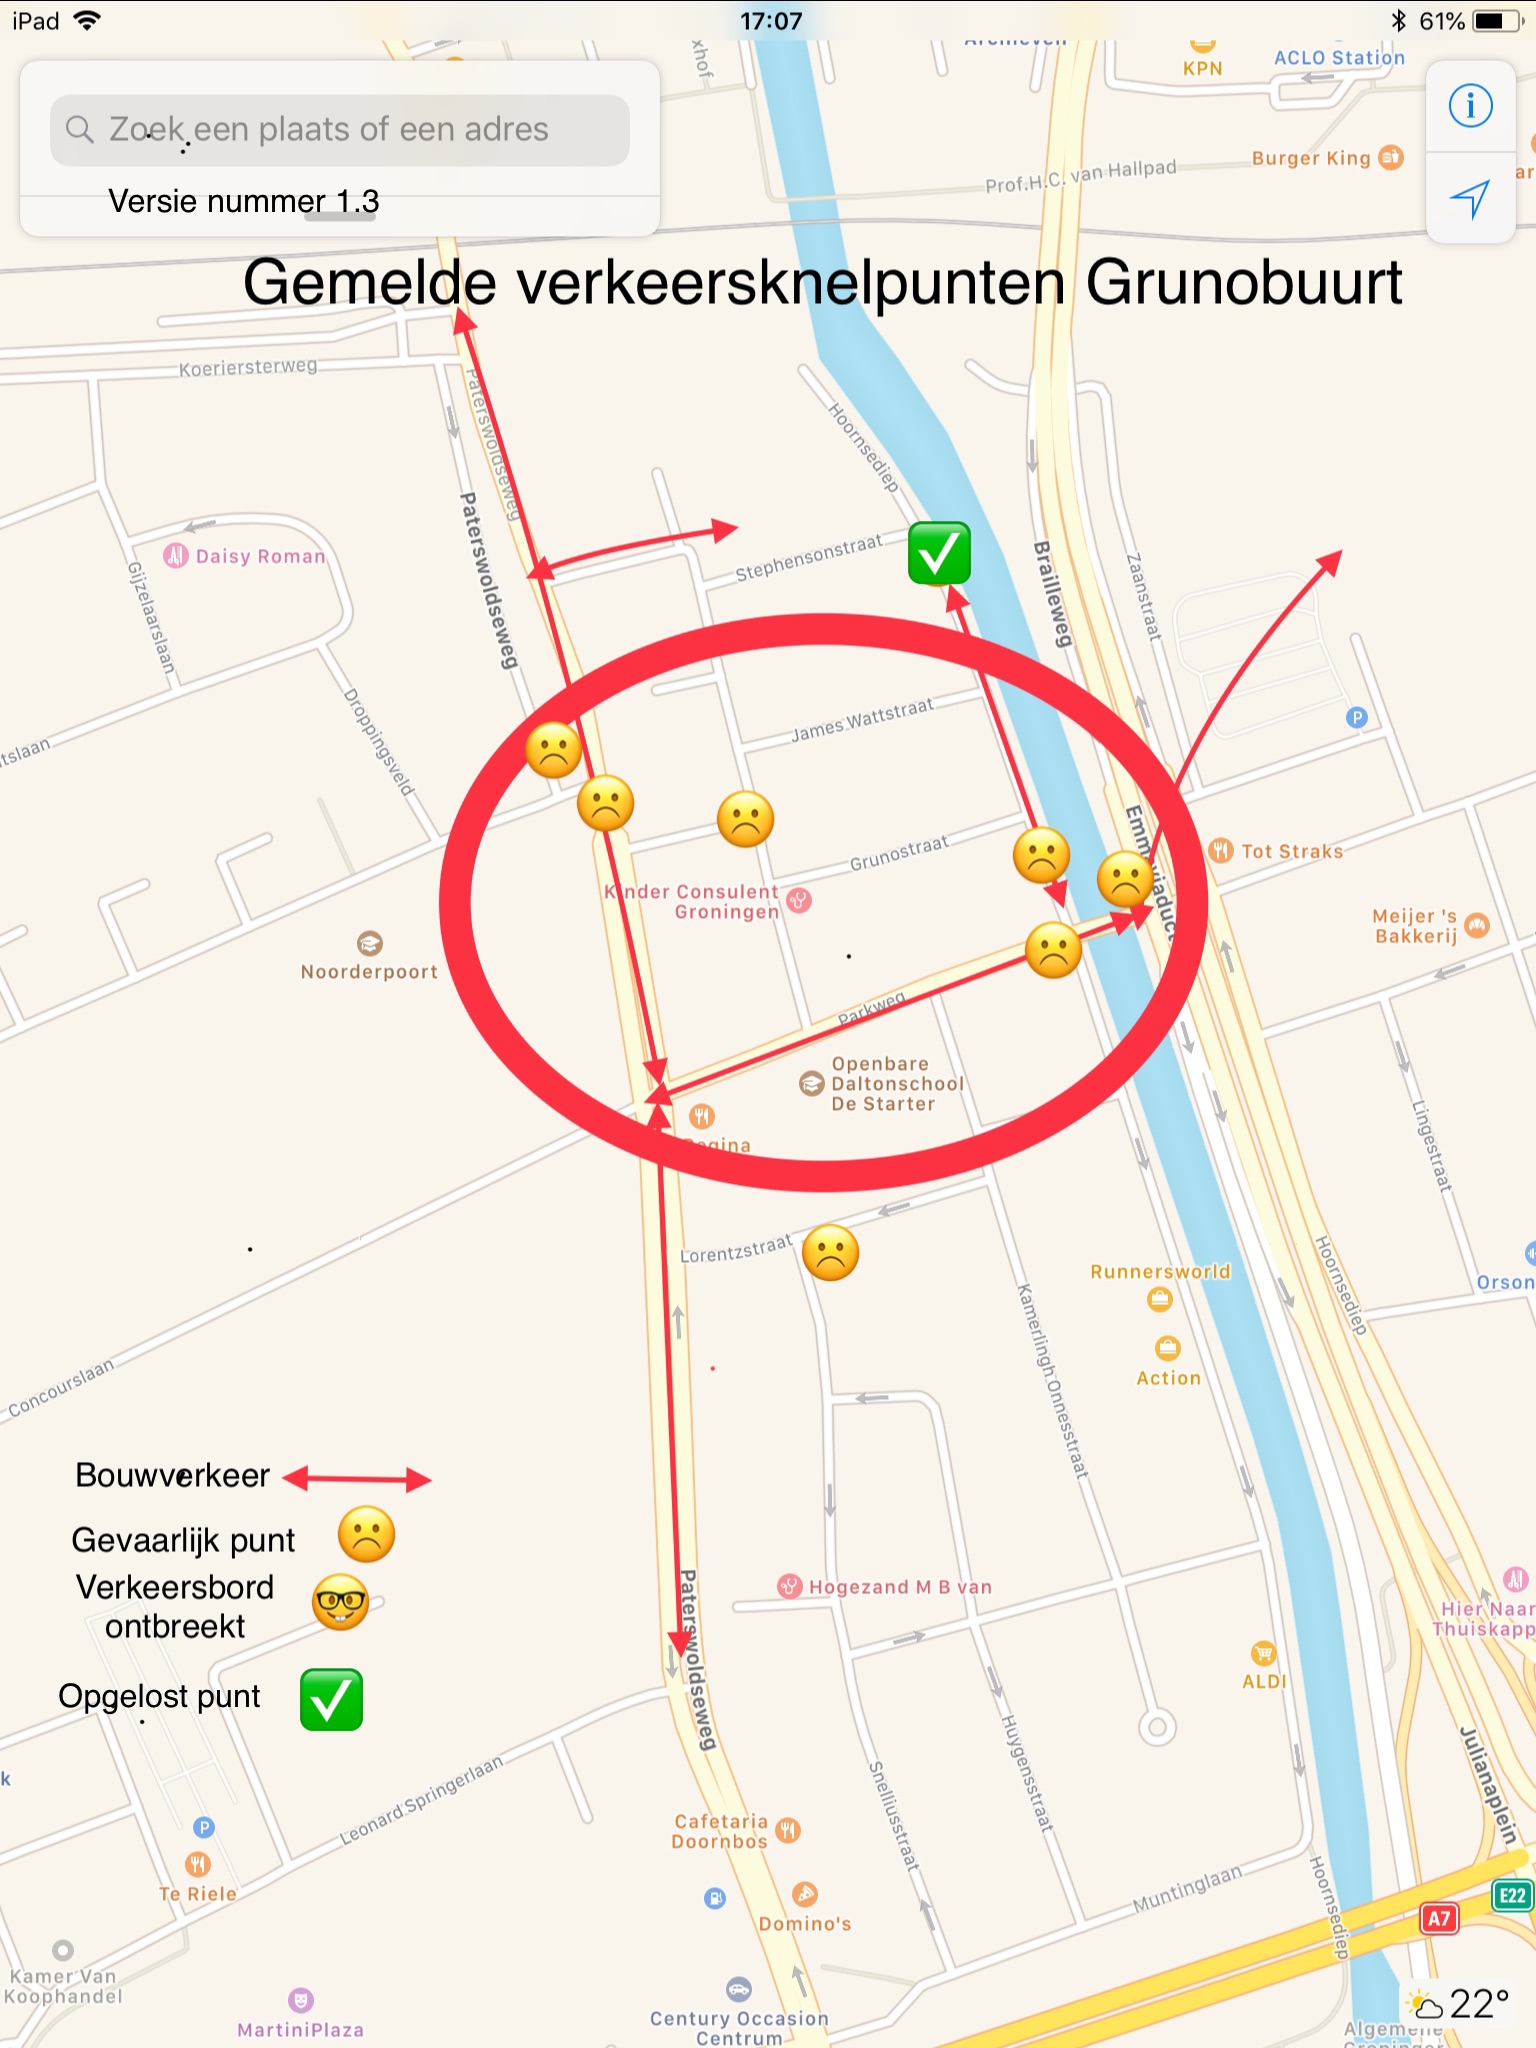 Verkeersknelpunten Grunobuurt v1.3 (op 10 juli 2018)